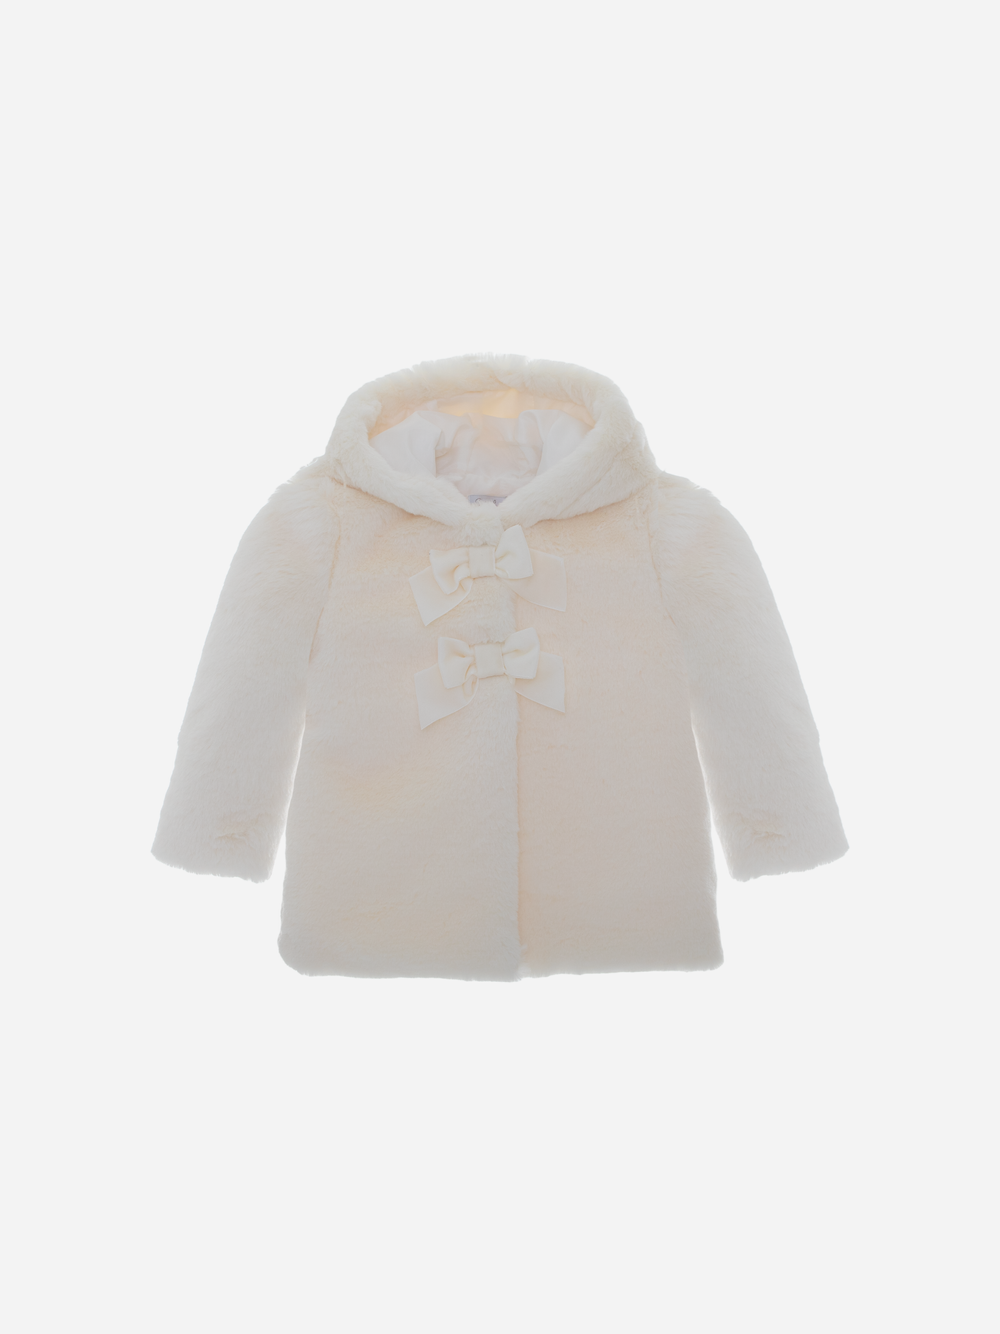 Off White Fur Coat